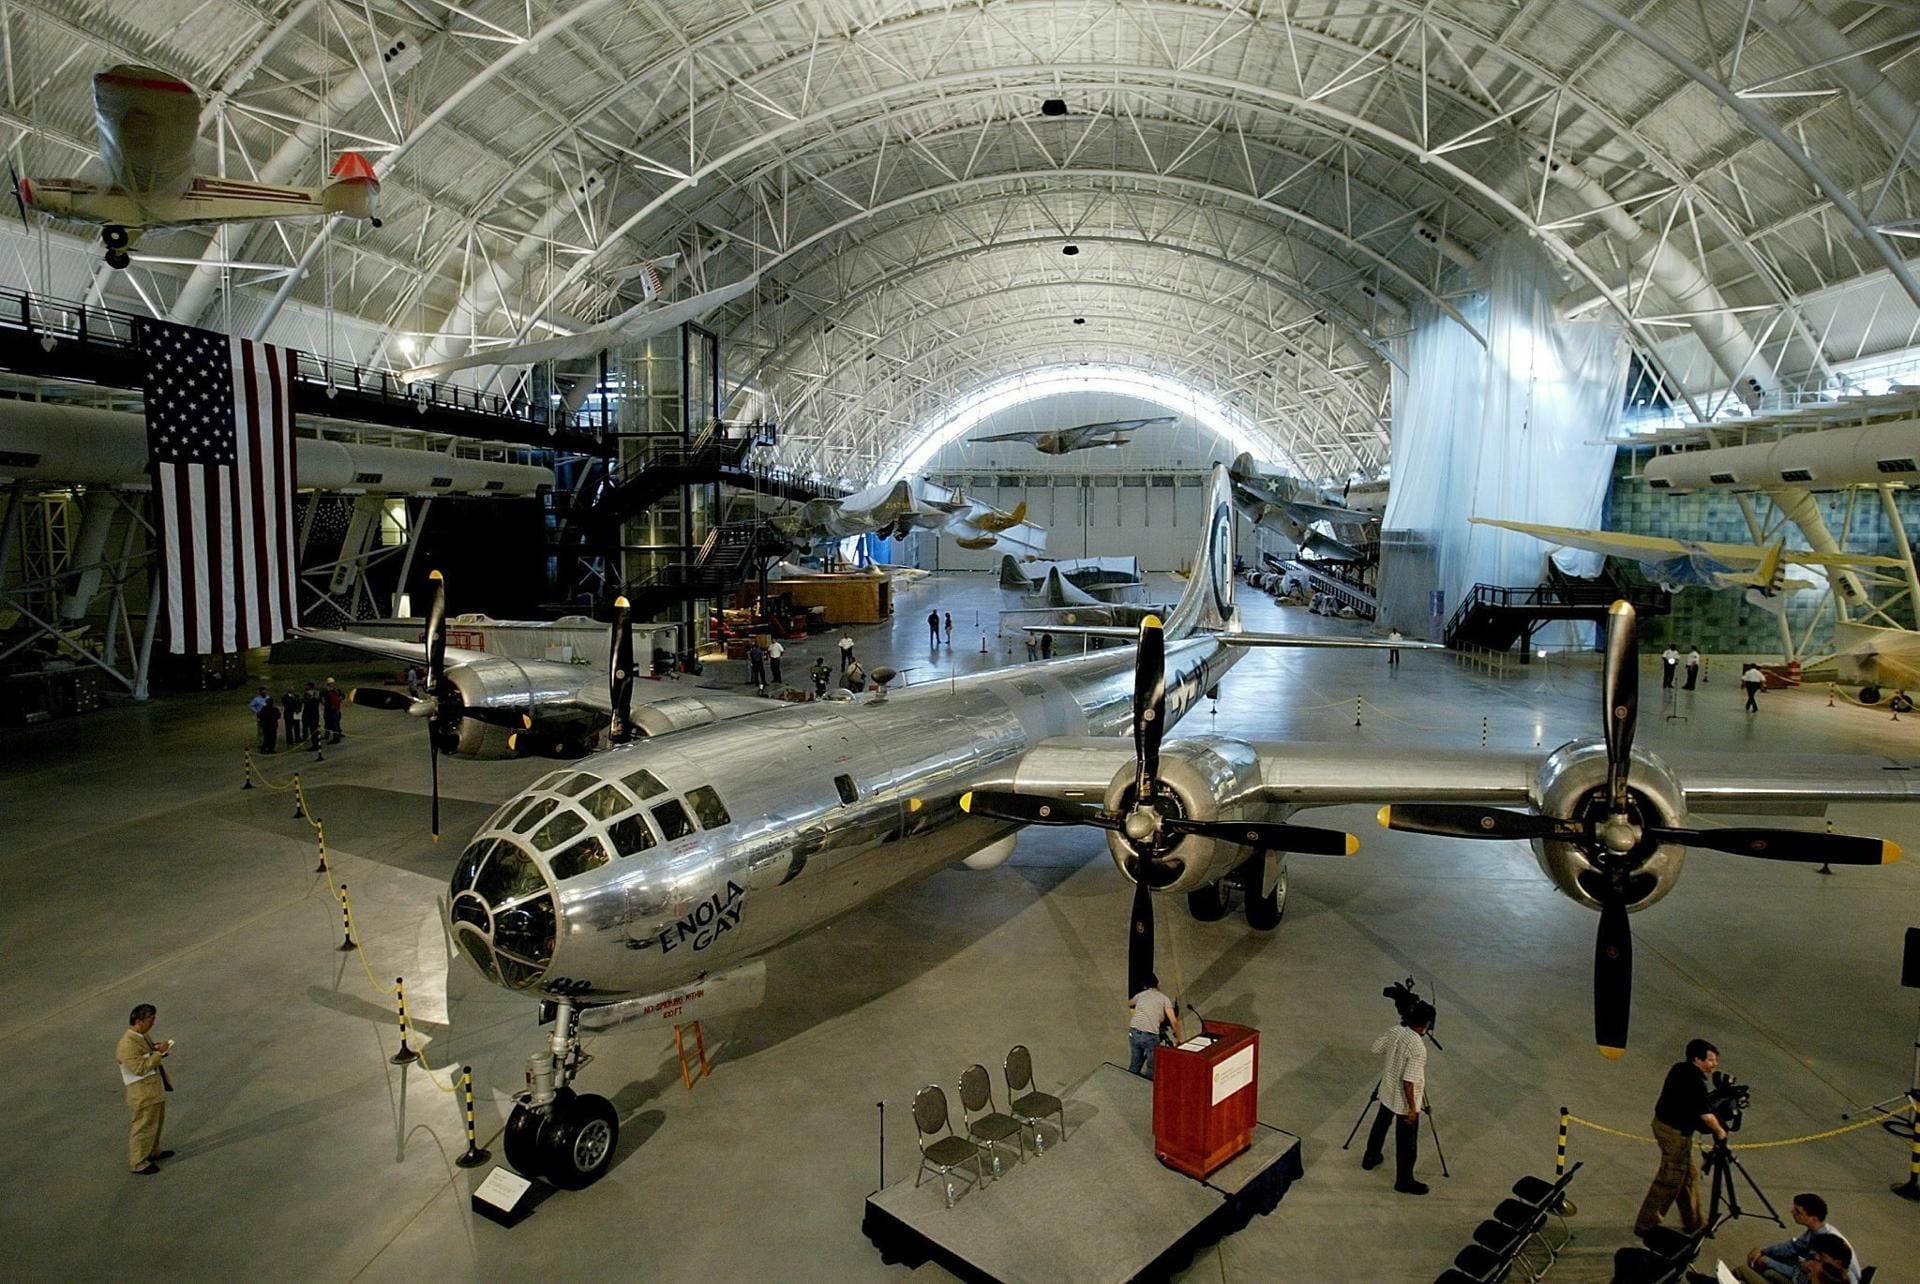 Eher zweifelhaften Ruhm erwarb der Boeing B-29-Bomber mit dem Namen "Enola Gay", der die erste Atombombe über Japan abwarf.